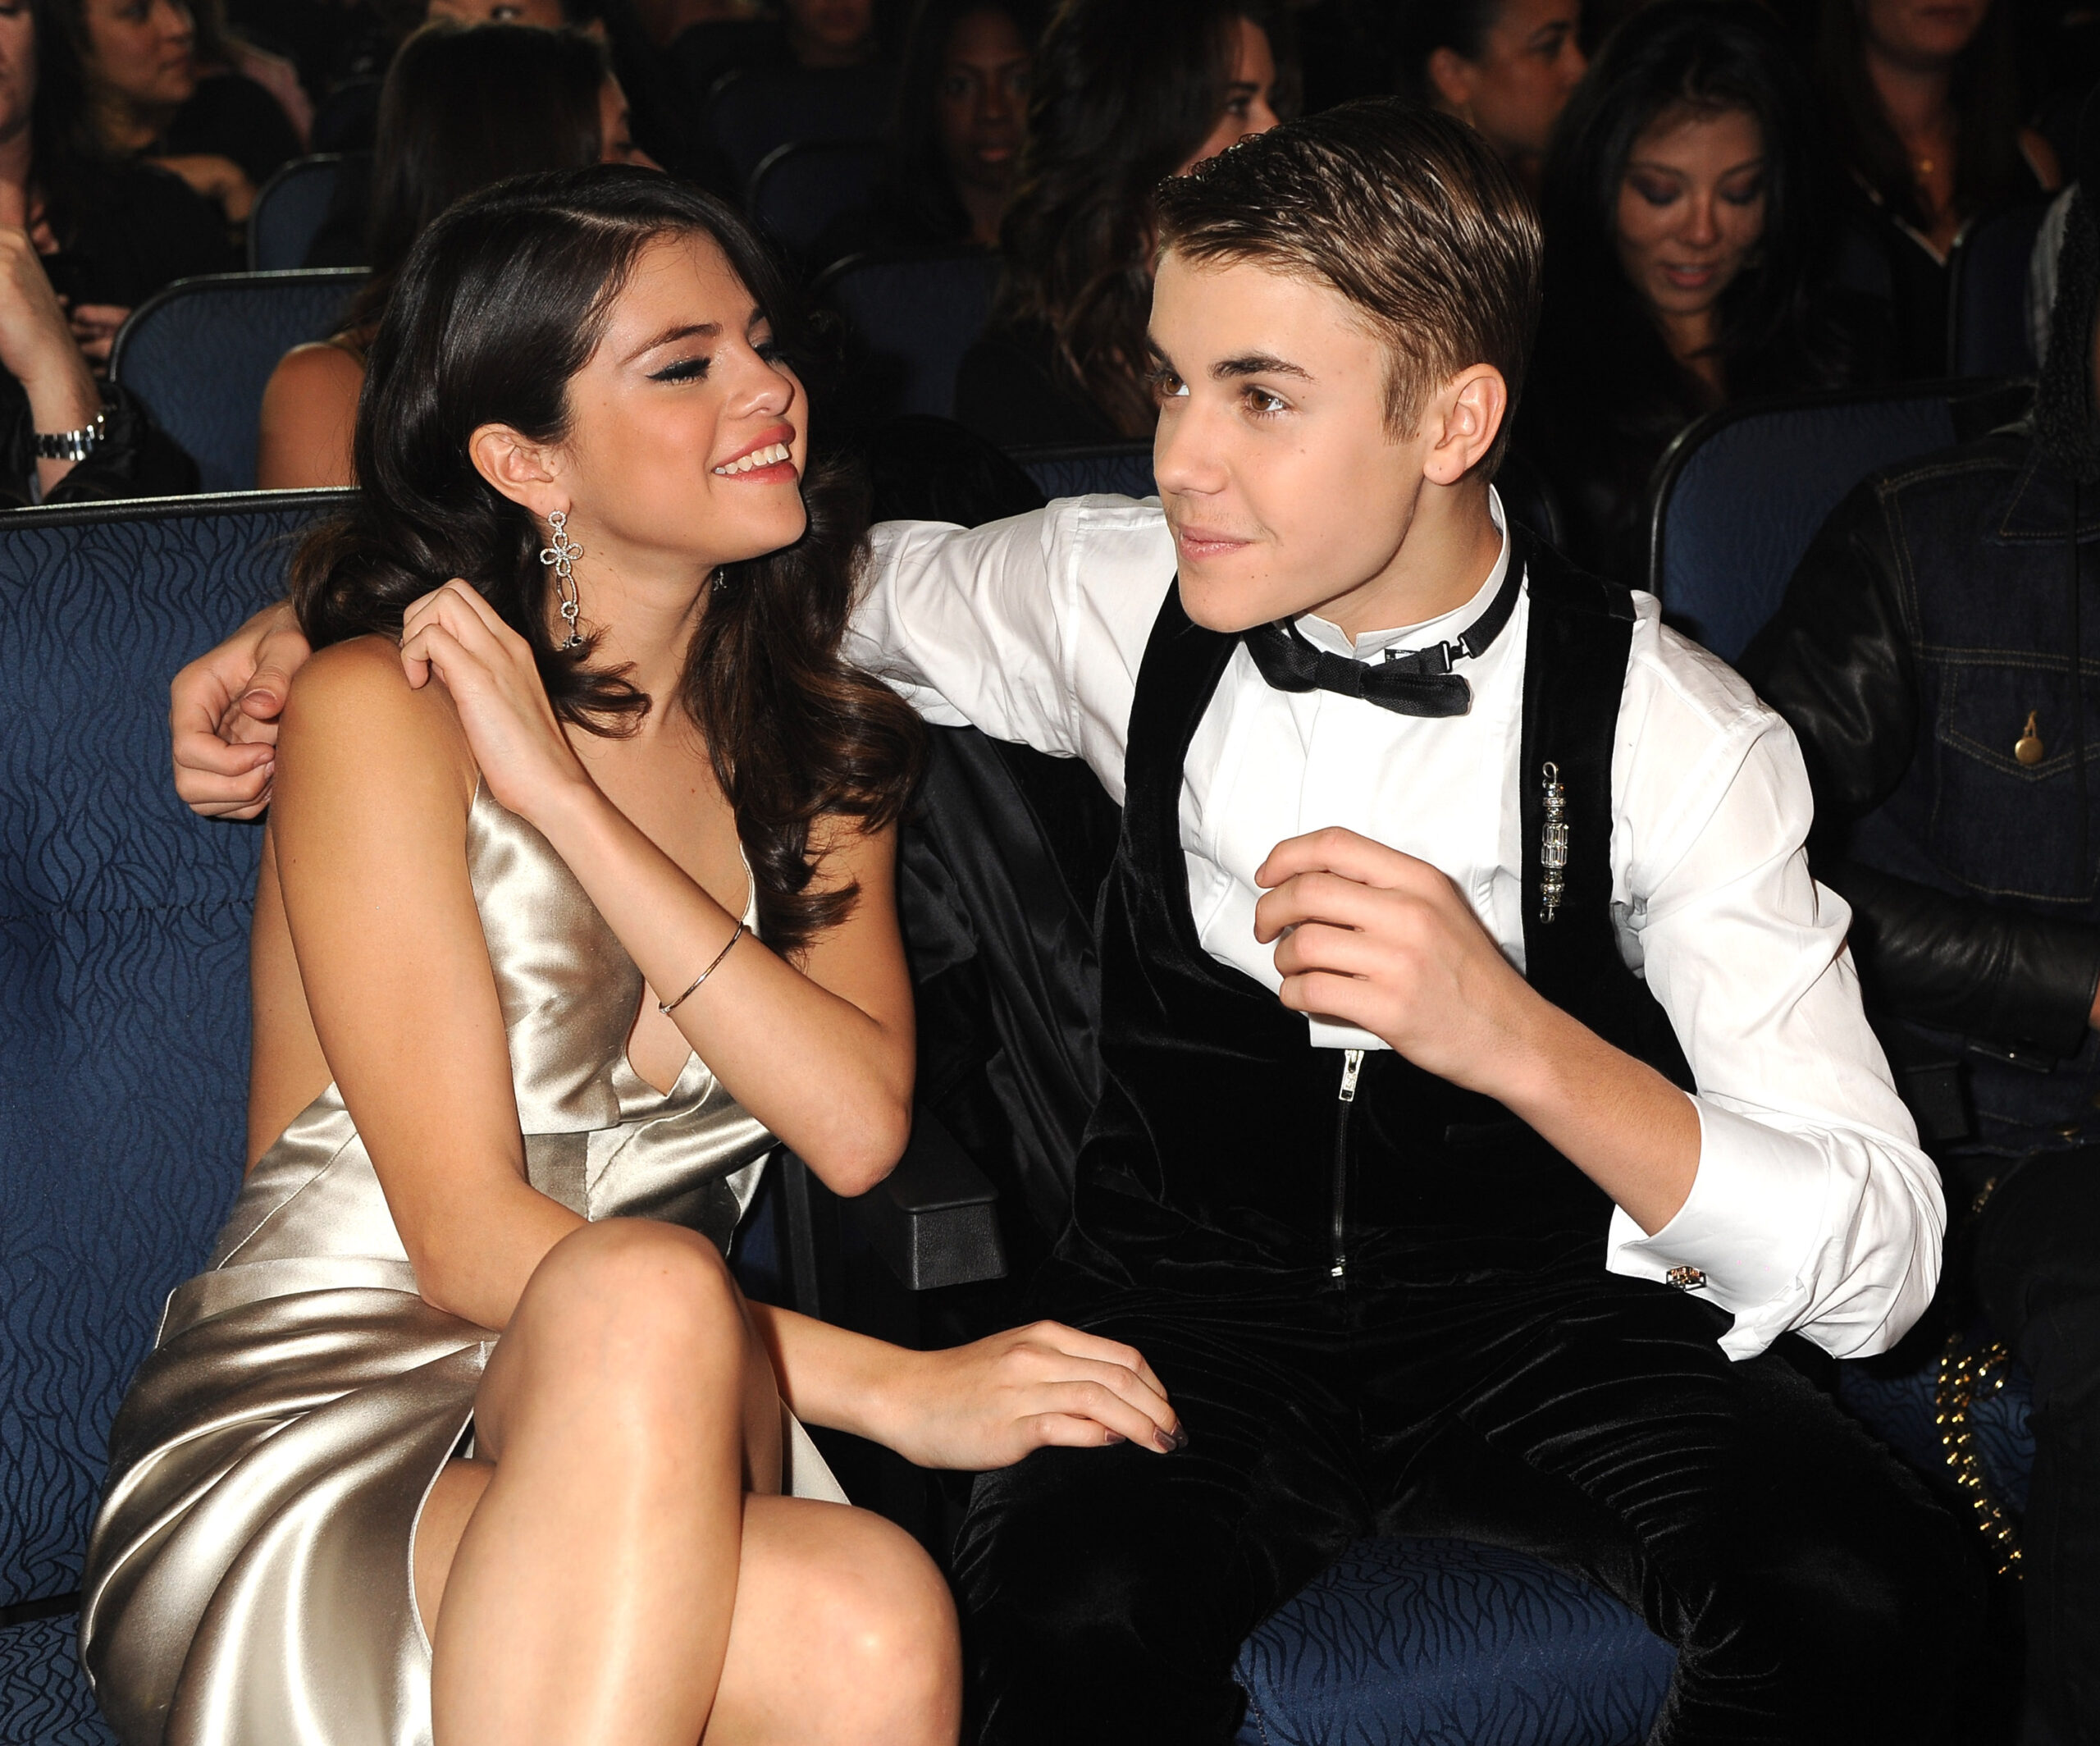 FOTO: Selena și Bieber s-au întâlnit și fanii au luat-o razna. Biebs a fost acasă la ea!